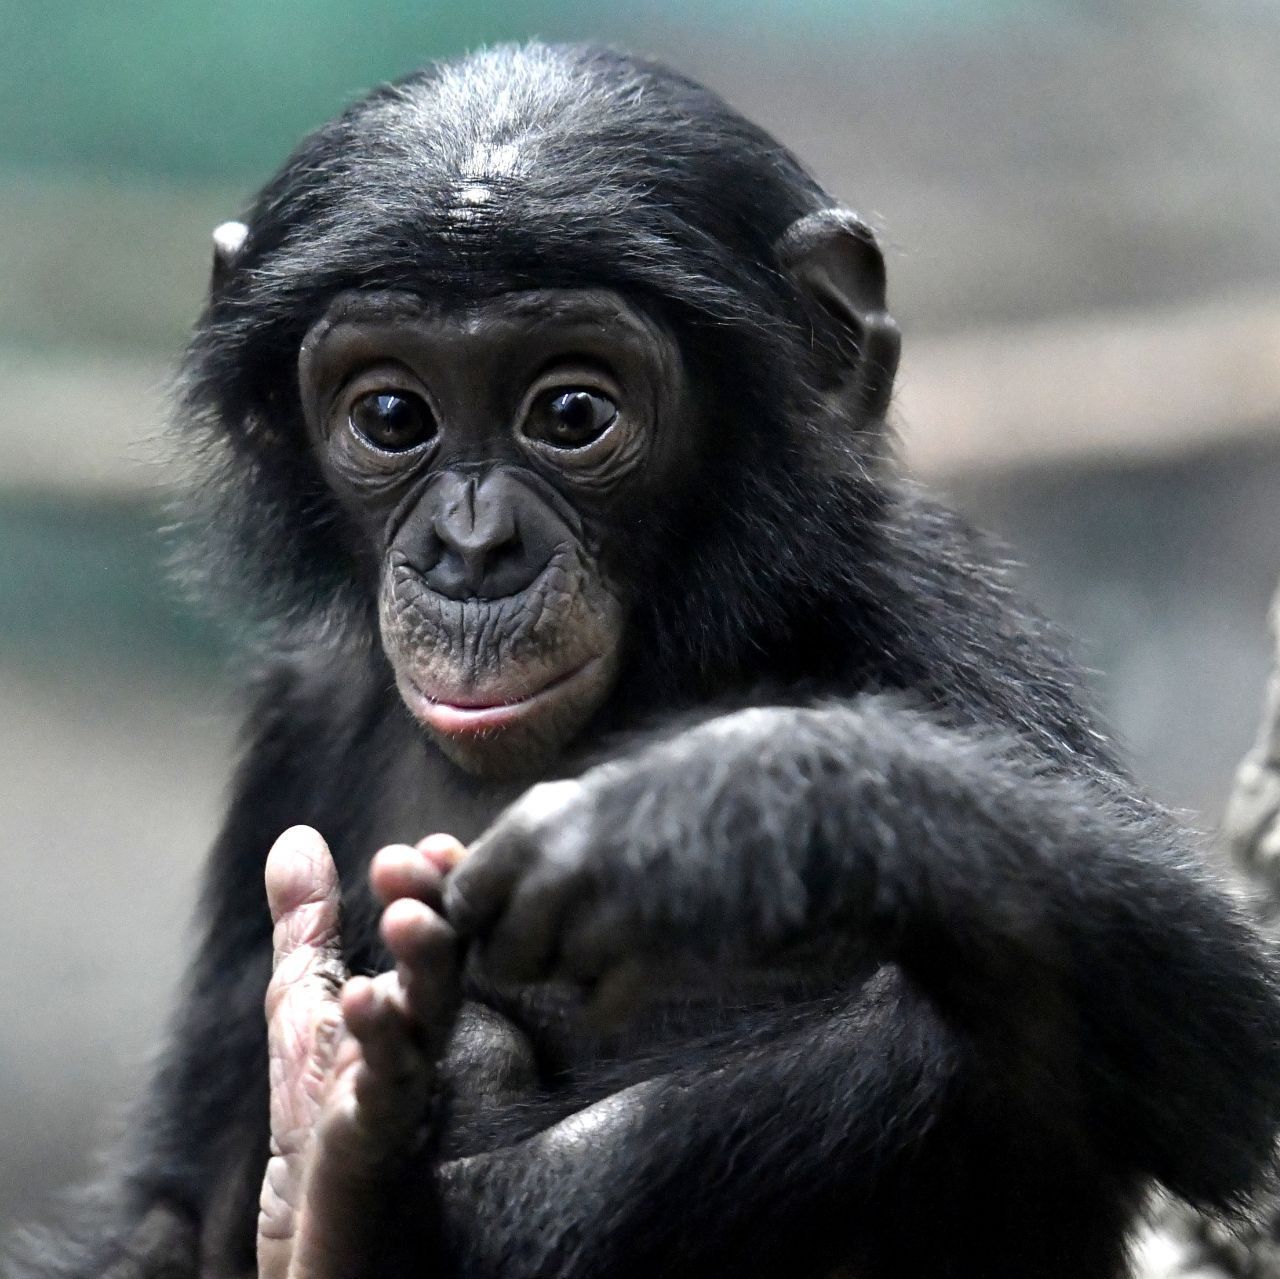 Zur Gattung der Schimpansen zählt auch der Bonobo, der eine ausgeprägte Fähigkeit zur Empathie hat. Forscher  führten in einem Versuch 2 einander fremde Bonobos in zwei durch Gitter getrennte Räume. Über einen Mechanismus hatte einer der beiden die Möglichkeit, einen Apfel in den anderen Raum fallen zu lassen - und das tat er auch: Selbstlos half er dem fremden Nachbarn, an die Leckerei zu kommen.